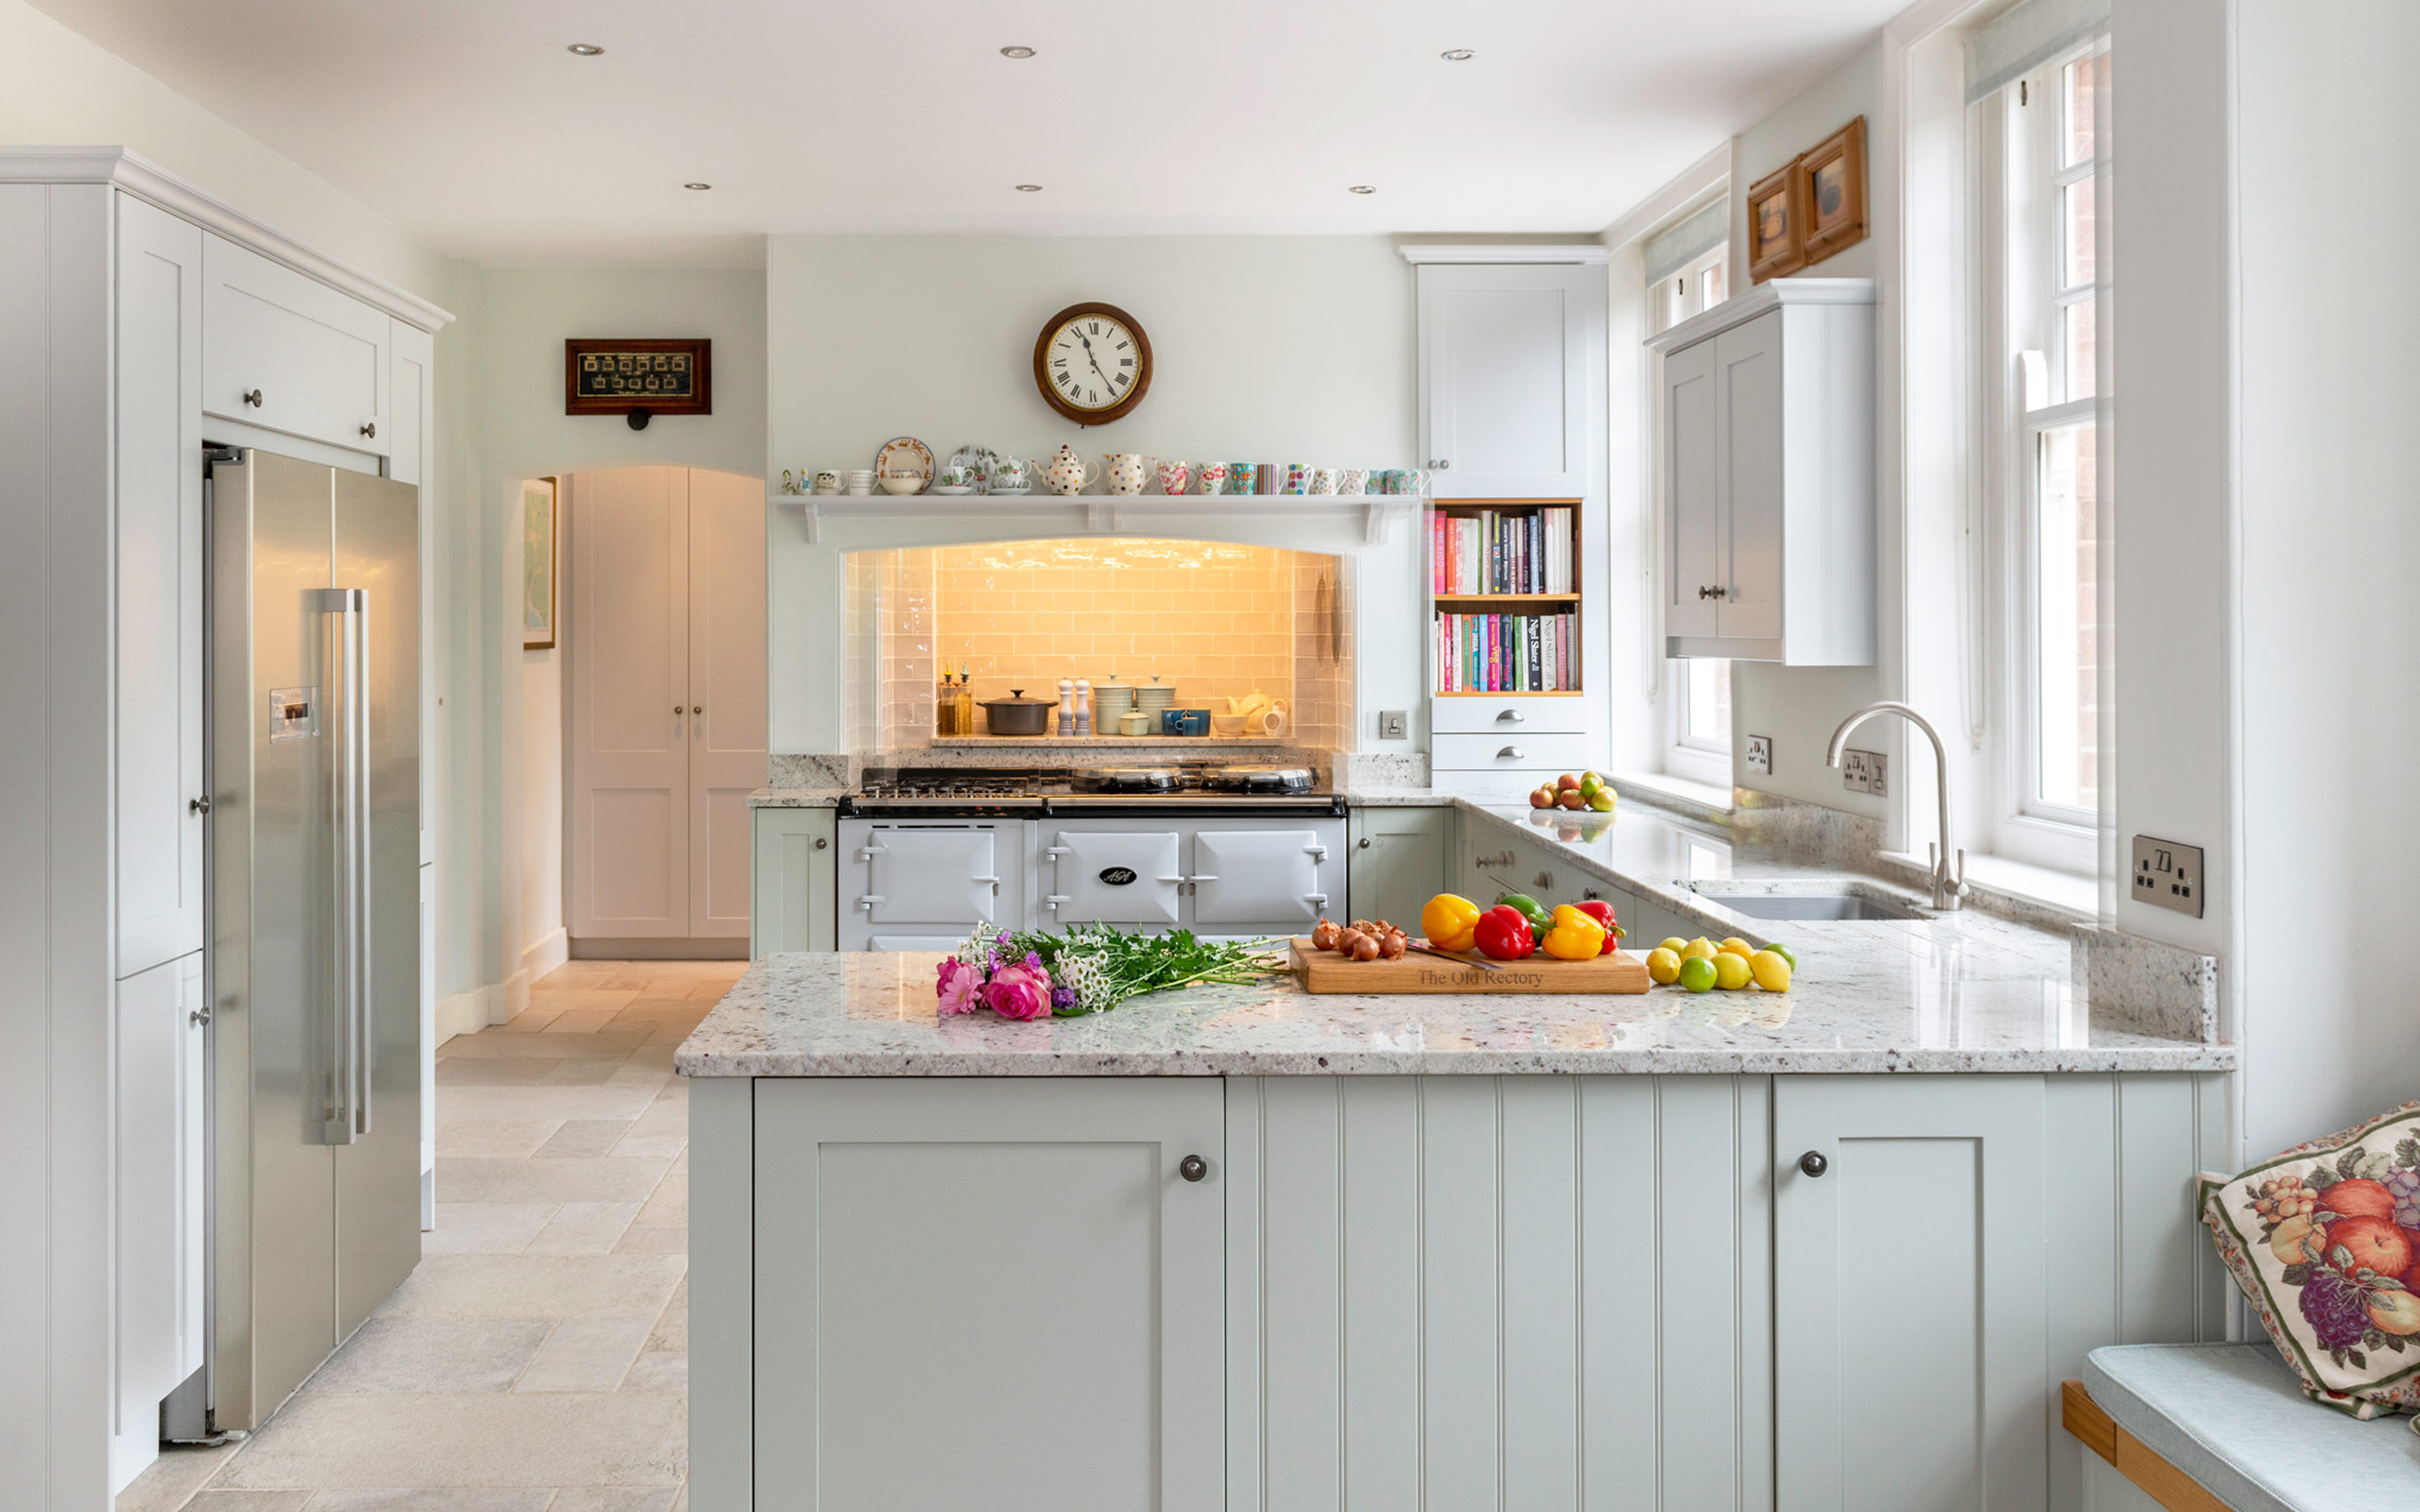 Ashgrove Kitchens Devon - Traditional Kitchen Design and Build Image 14